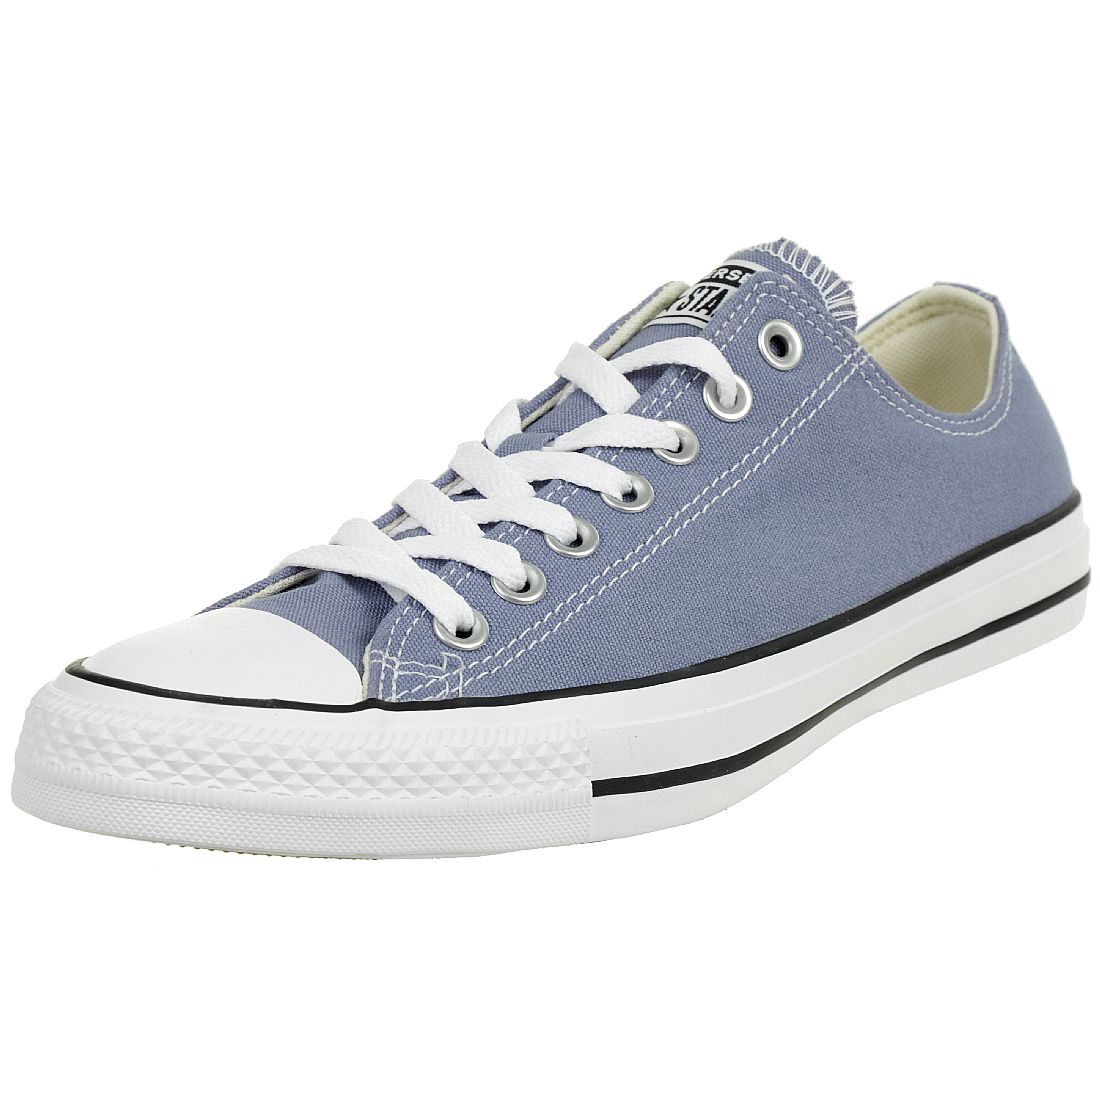 Converse CTAS OX Chuck Schuhe Textil Sneaker blau 164940C